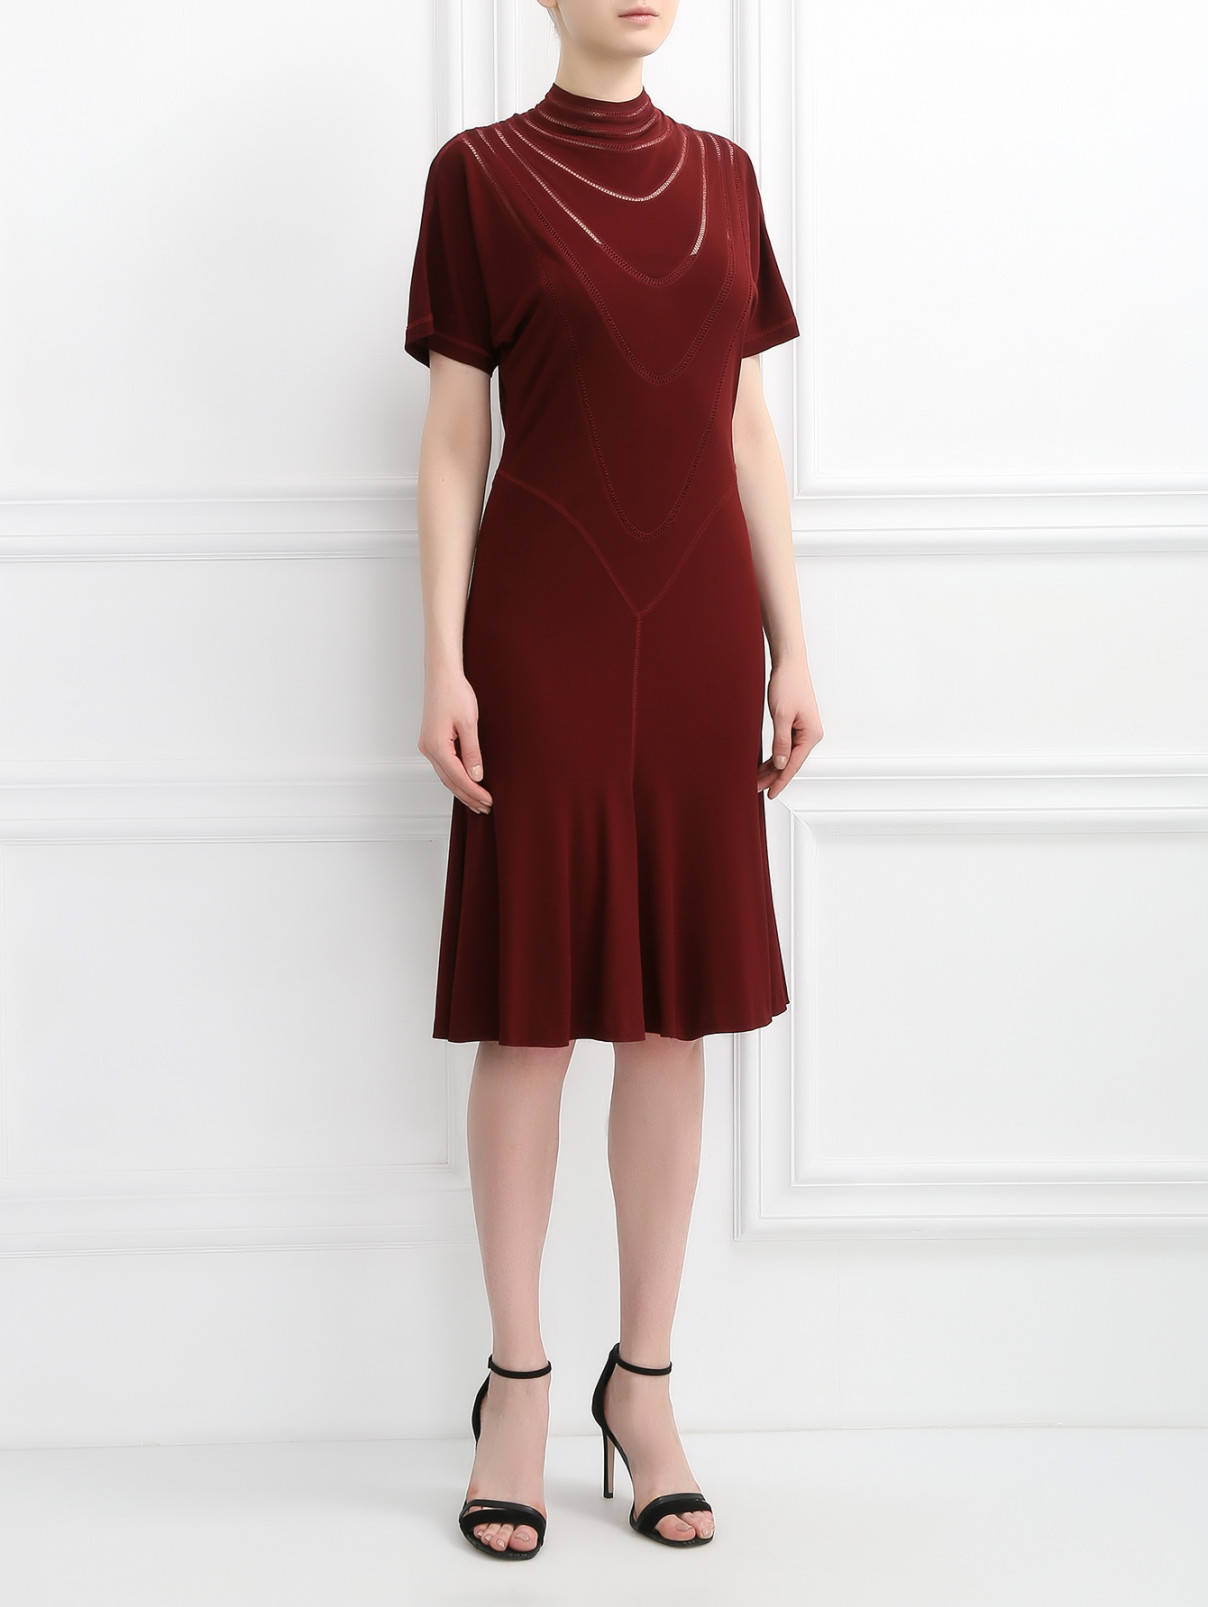 Трикотажное платье декорированное вышивкой Jean Paul Gaultier  –  Модель Общий вид  – Цвет:  Красный